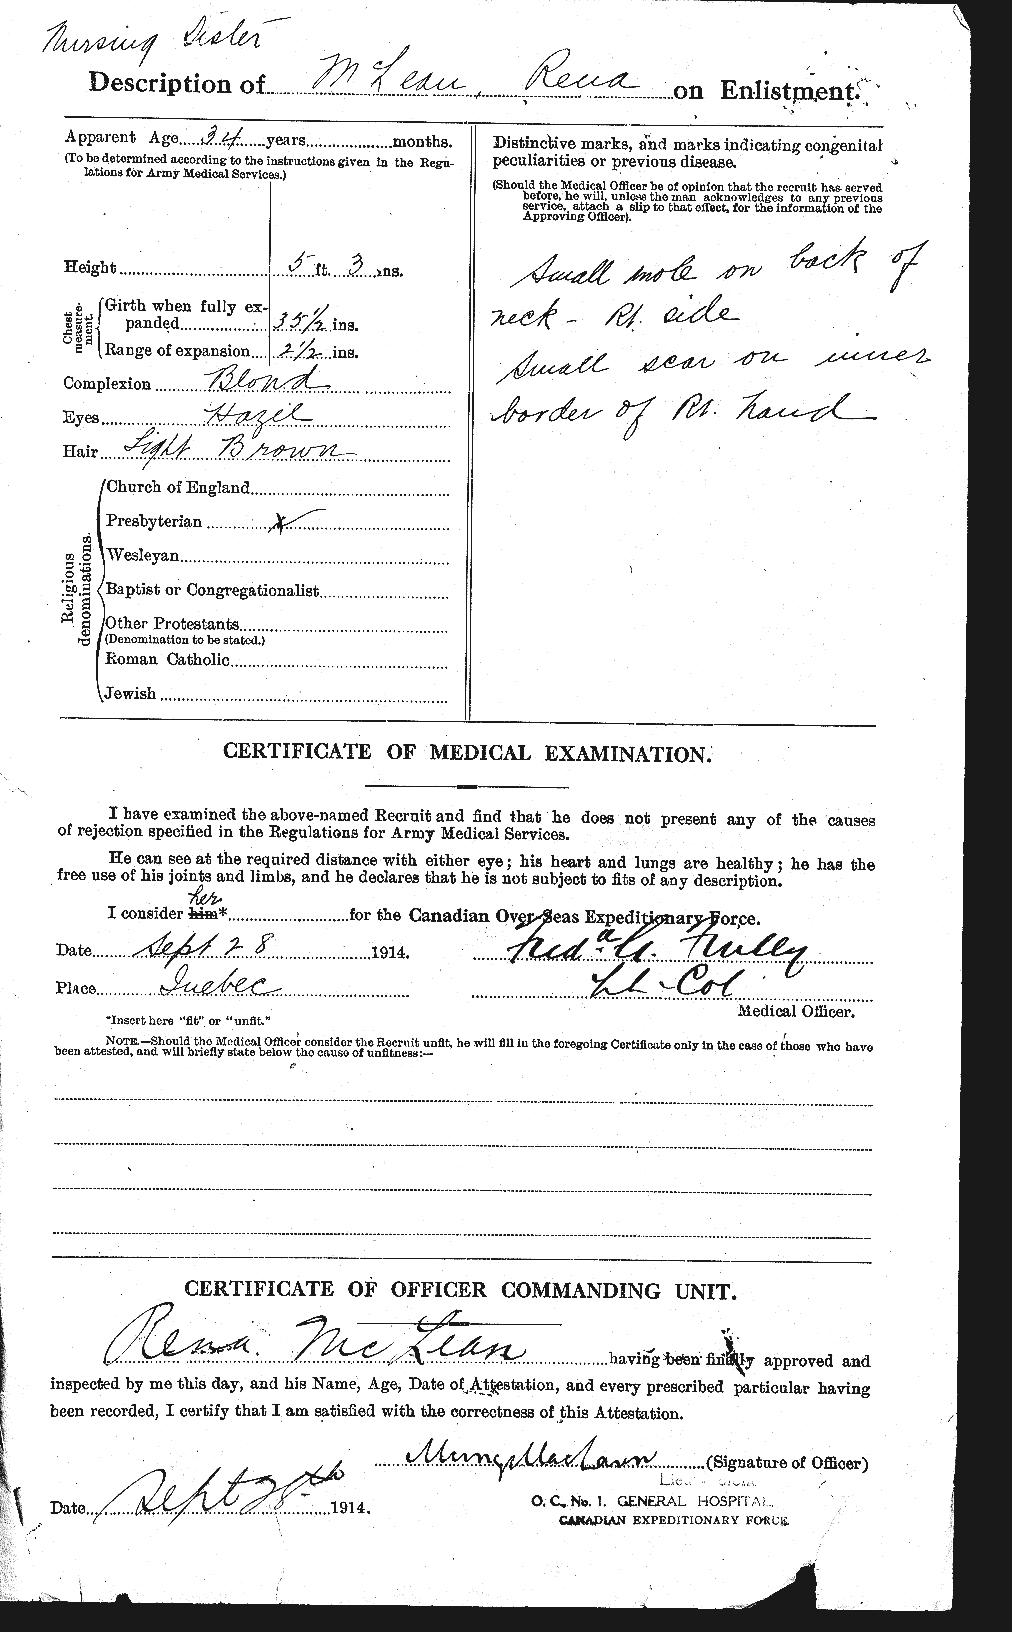 Dossiers du Personnel de la Première Guerre mondiale - CEC 237308b